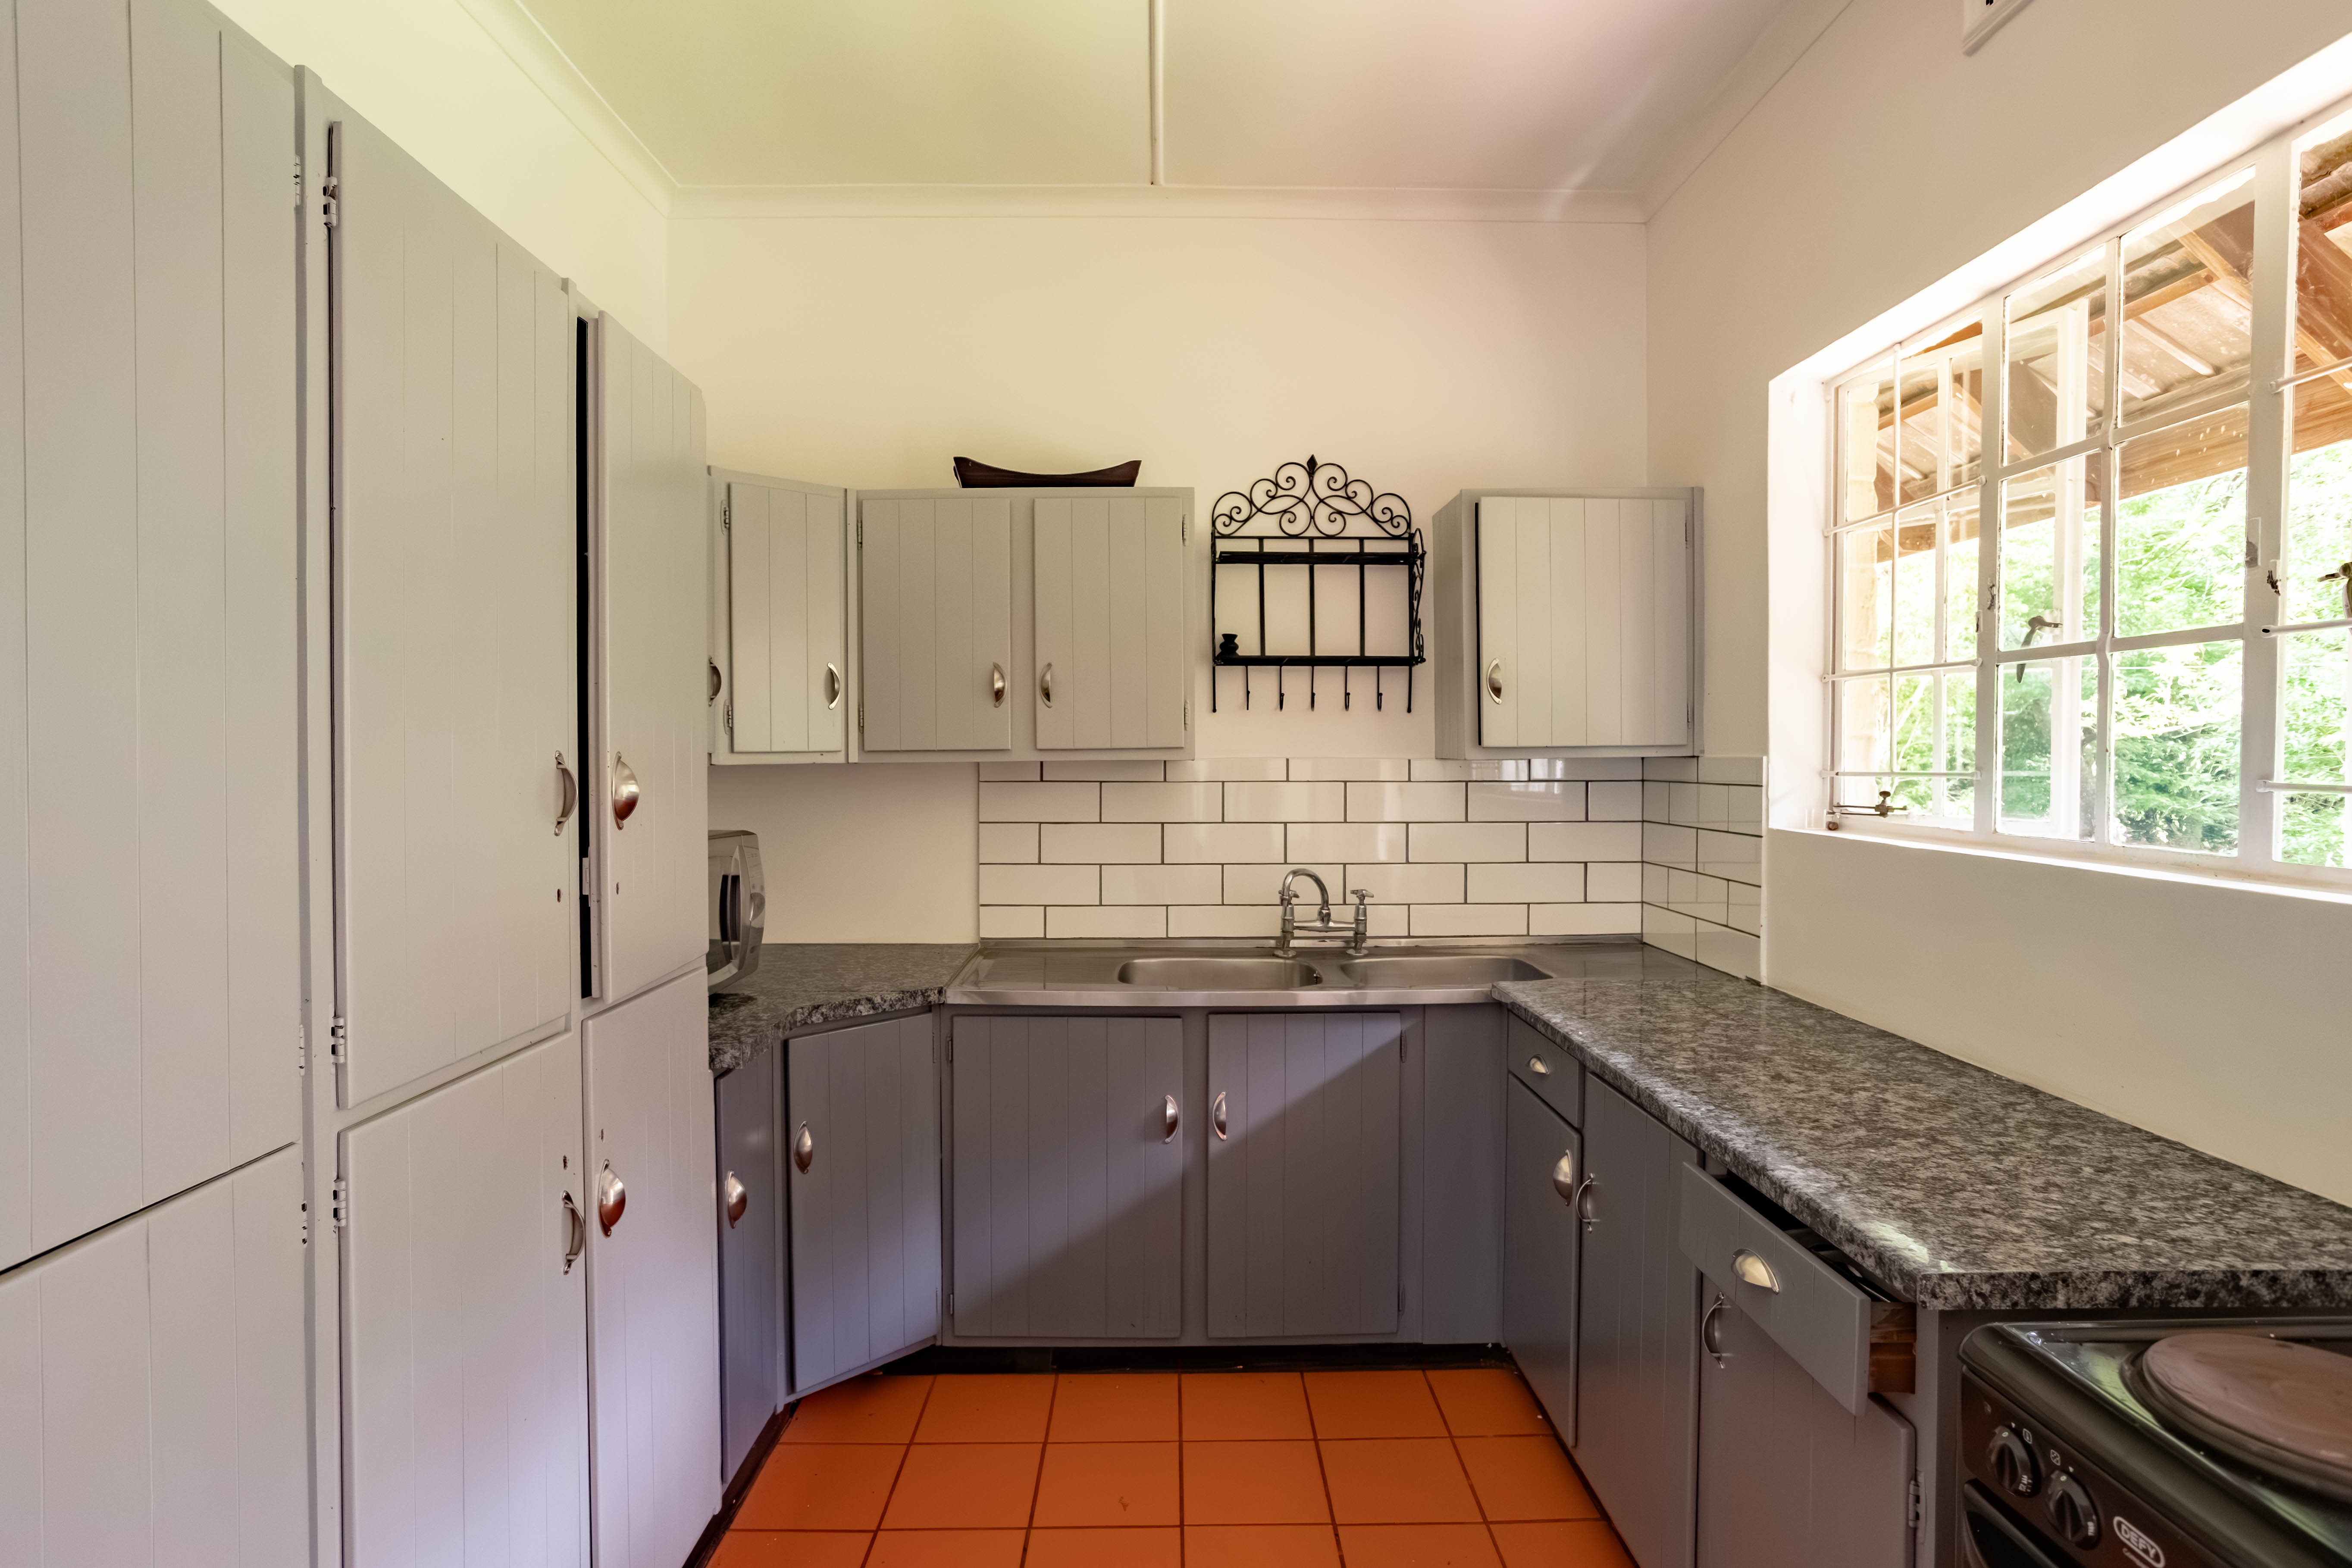 6 Bedroom Property for Sale in Blackridge KwaZulu-Natal